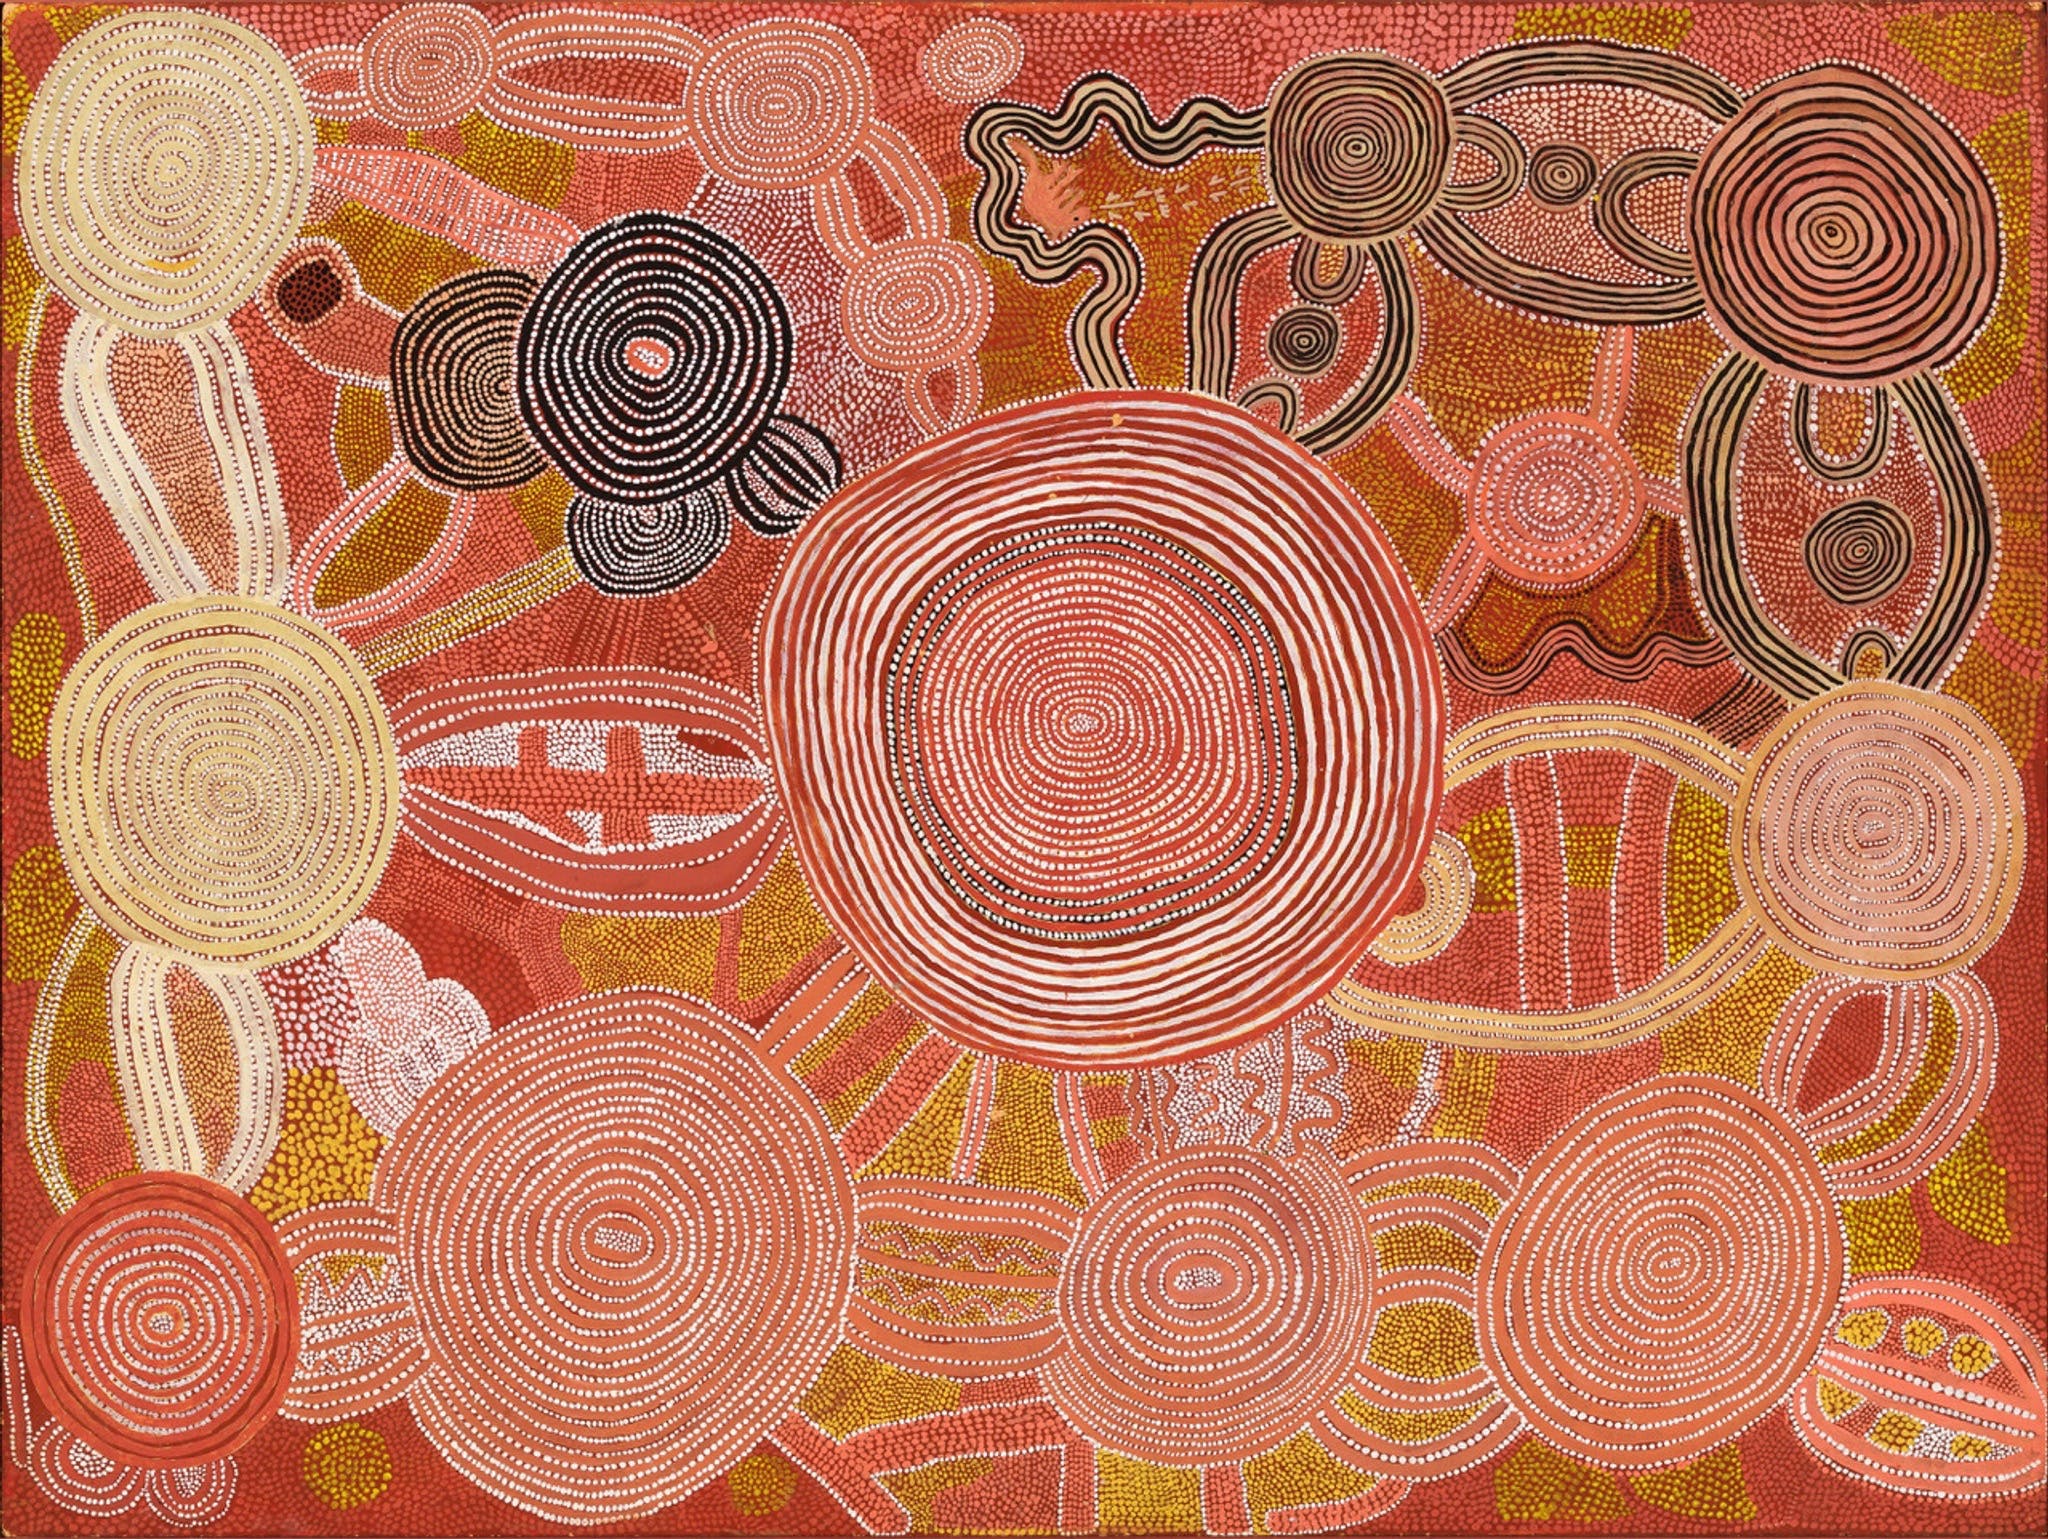 Reverence Exhibition of Australian Indigenous Art - Kingaroy Accommodation